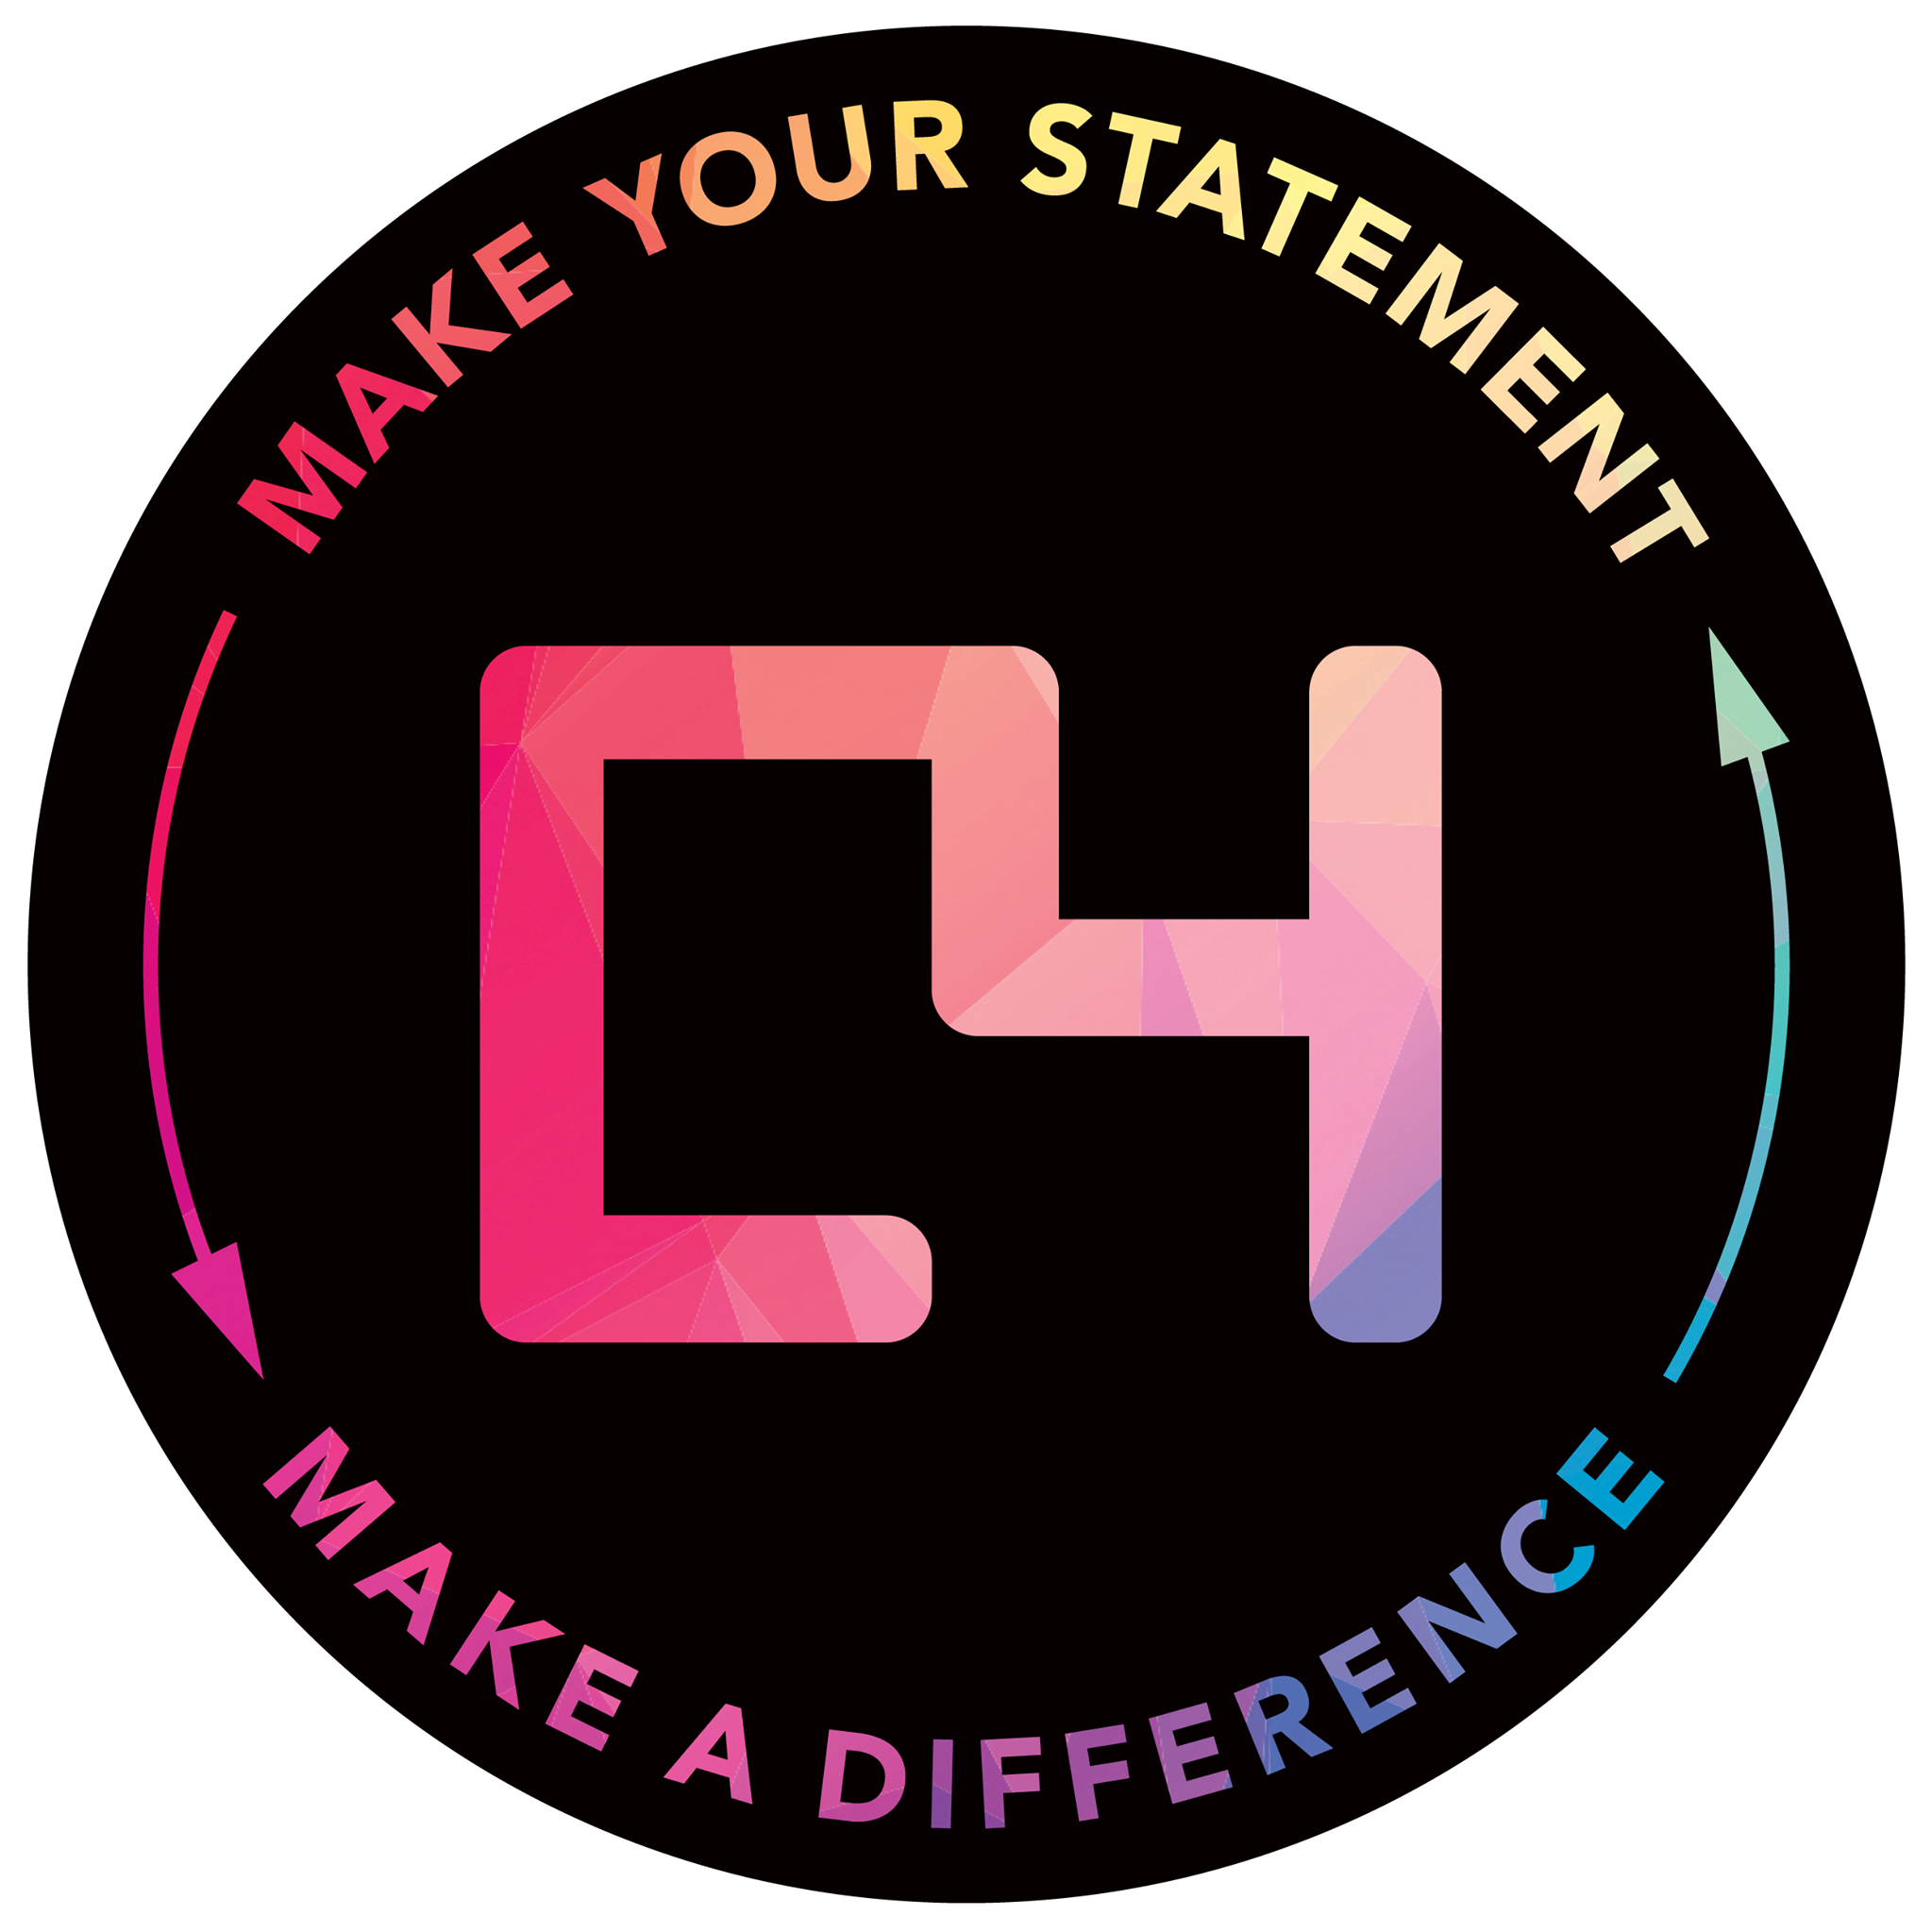 c4 logo 2